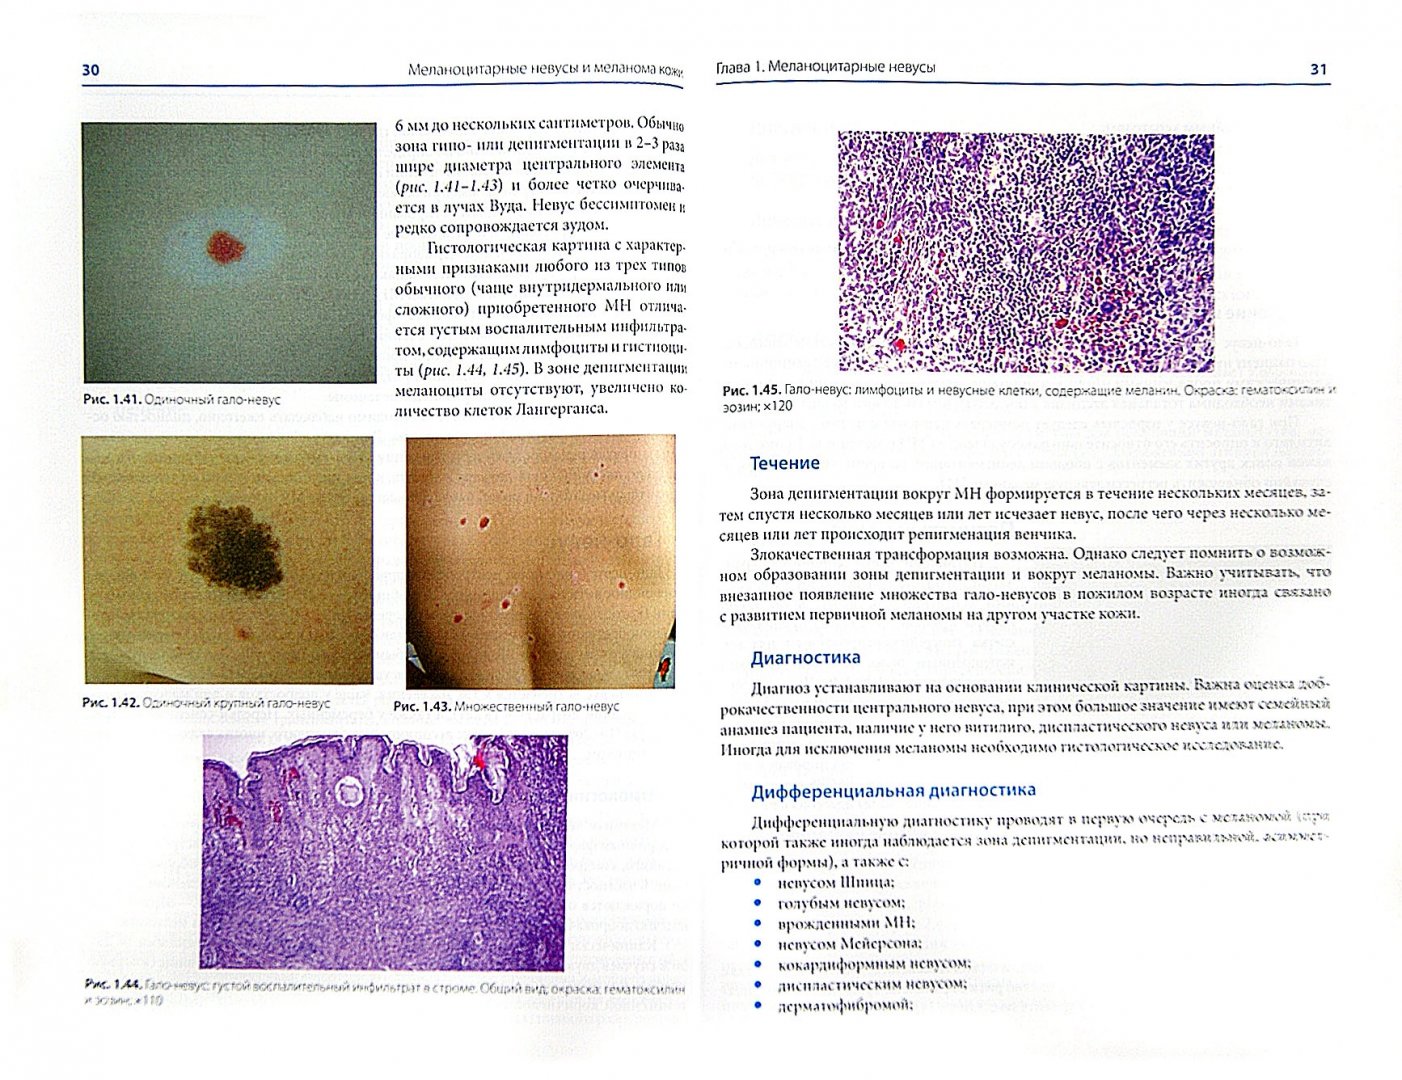 Иллюстрация 1 из 4 для Меланоцитарные невусы и меланома кожи. Руководство для практикующих врачей - Молочков, Демидов, Харкевич | Лабиринт - книги. Источник: Лабиринт